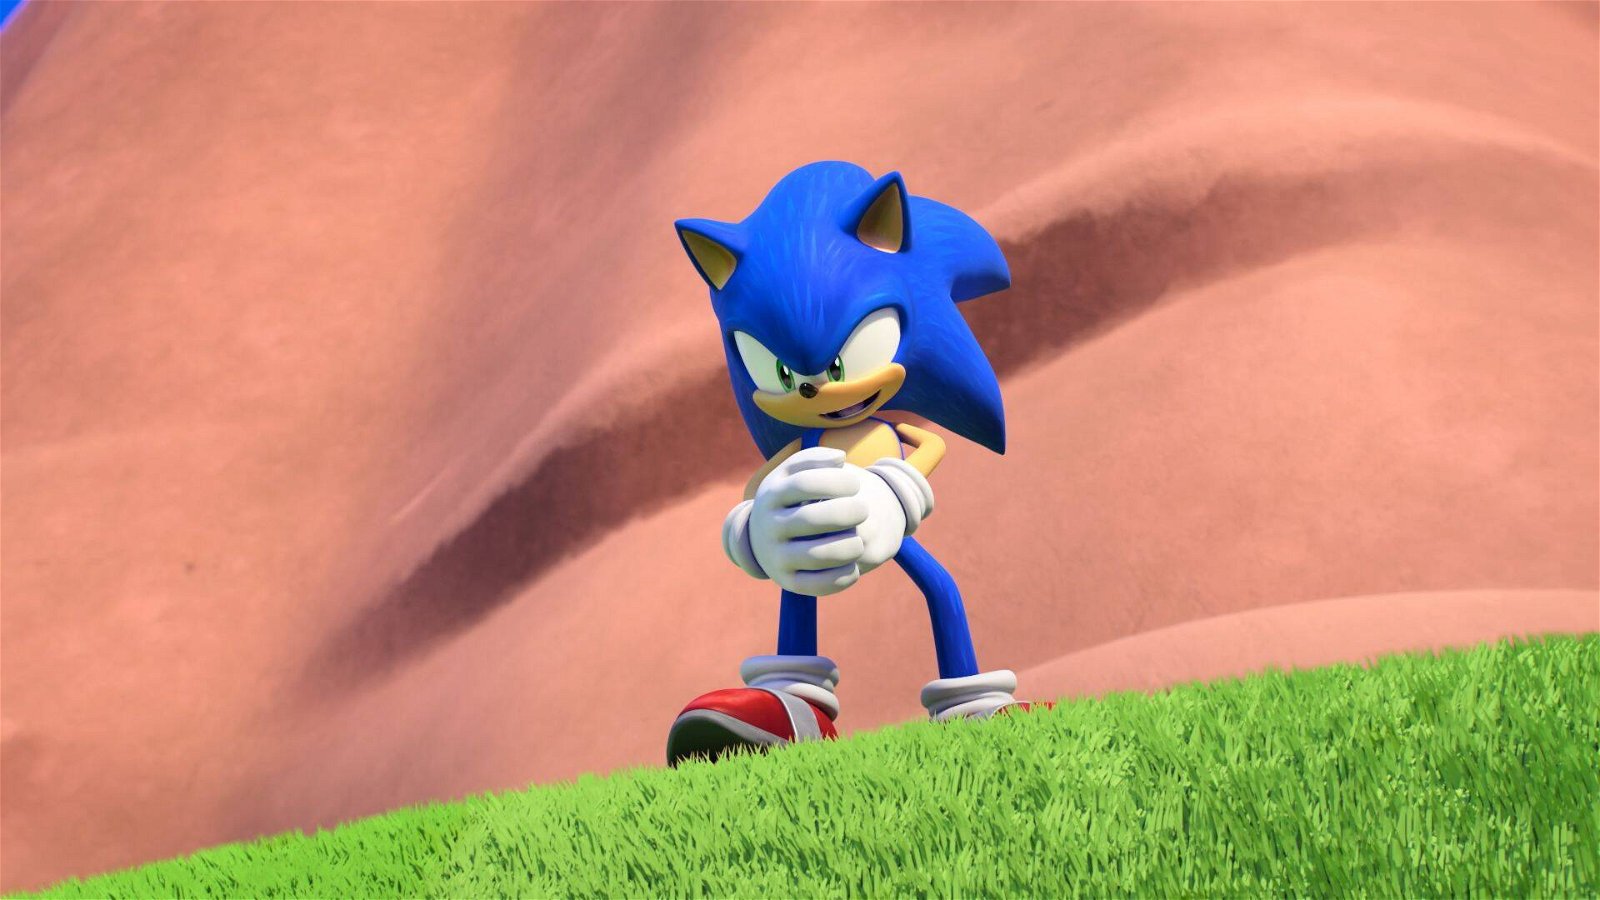 Sonic Prime corre pelo multiverso e sabe agradar aos fãs mais